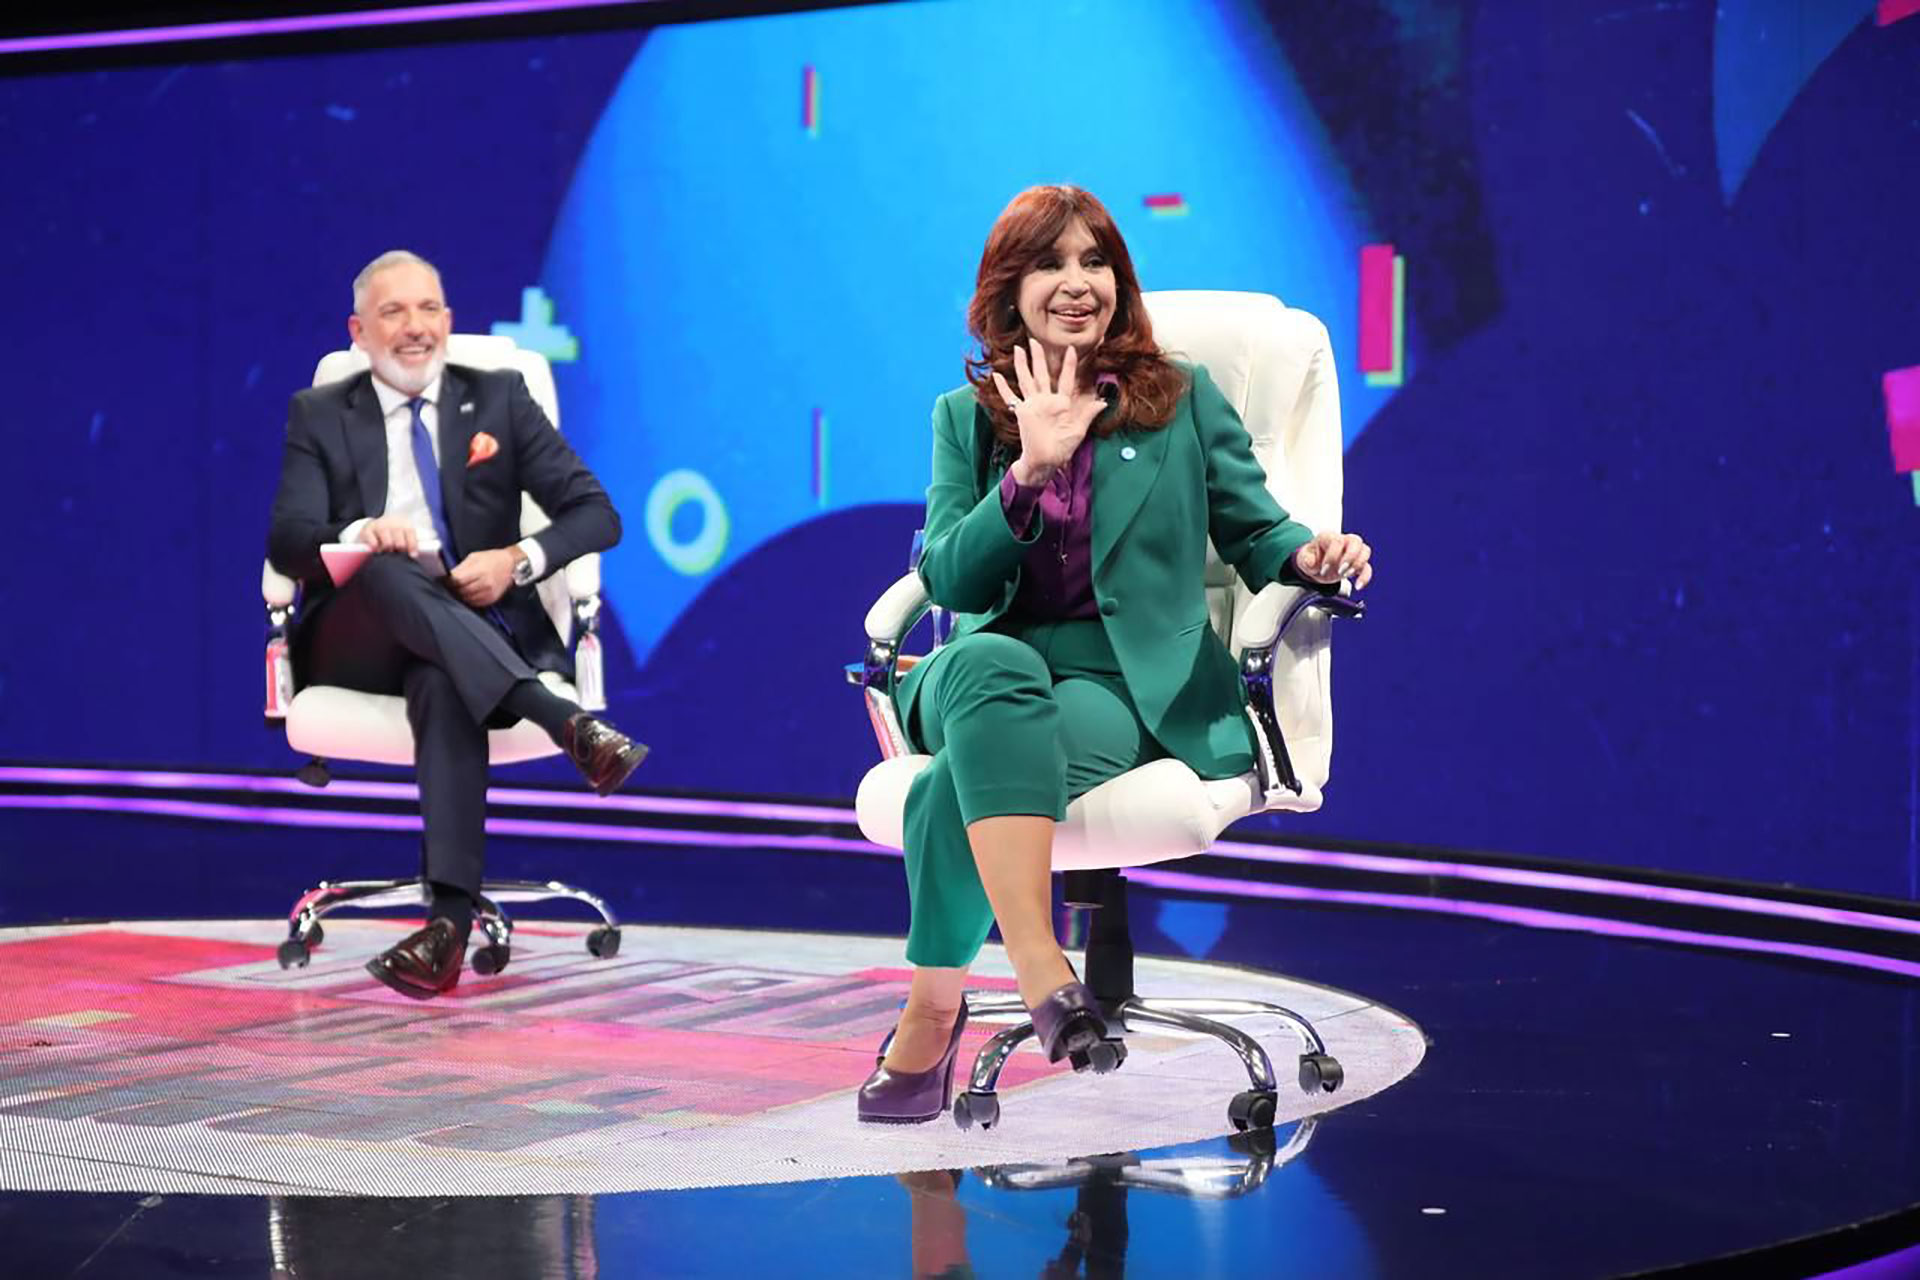 La vicepresidenta Cristina Kirchner en su primera entrevista televisiva a un medio argentino en seis años